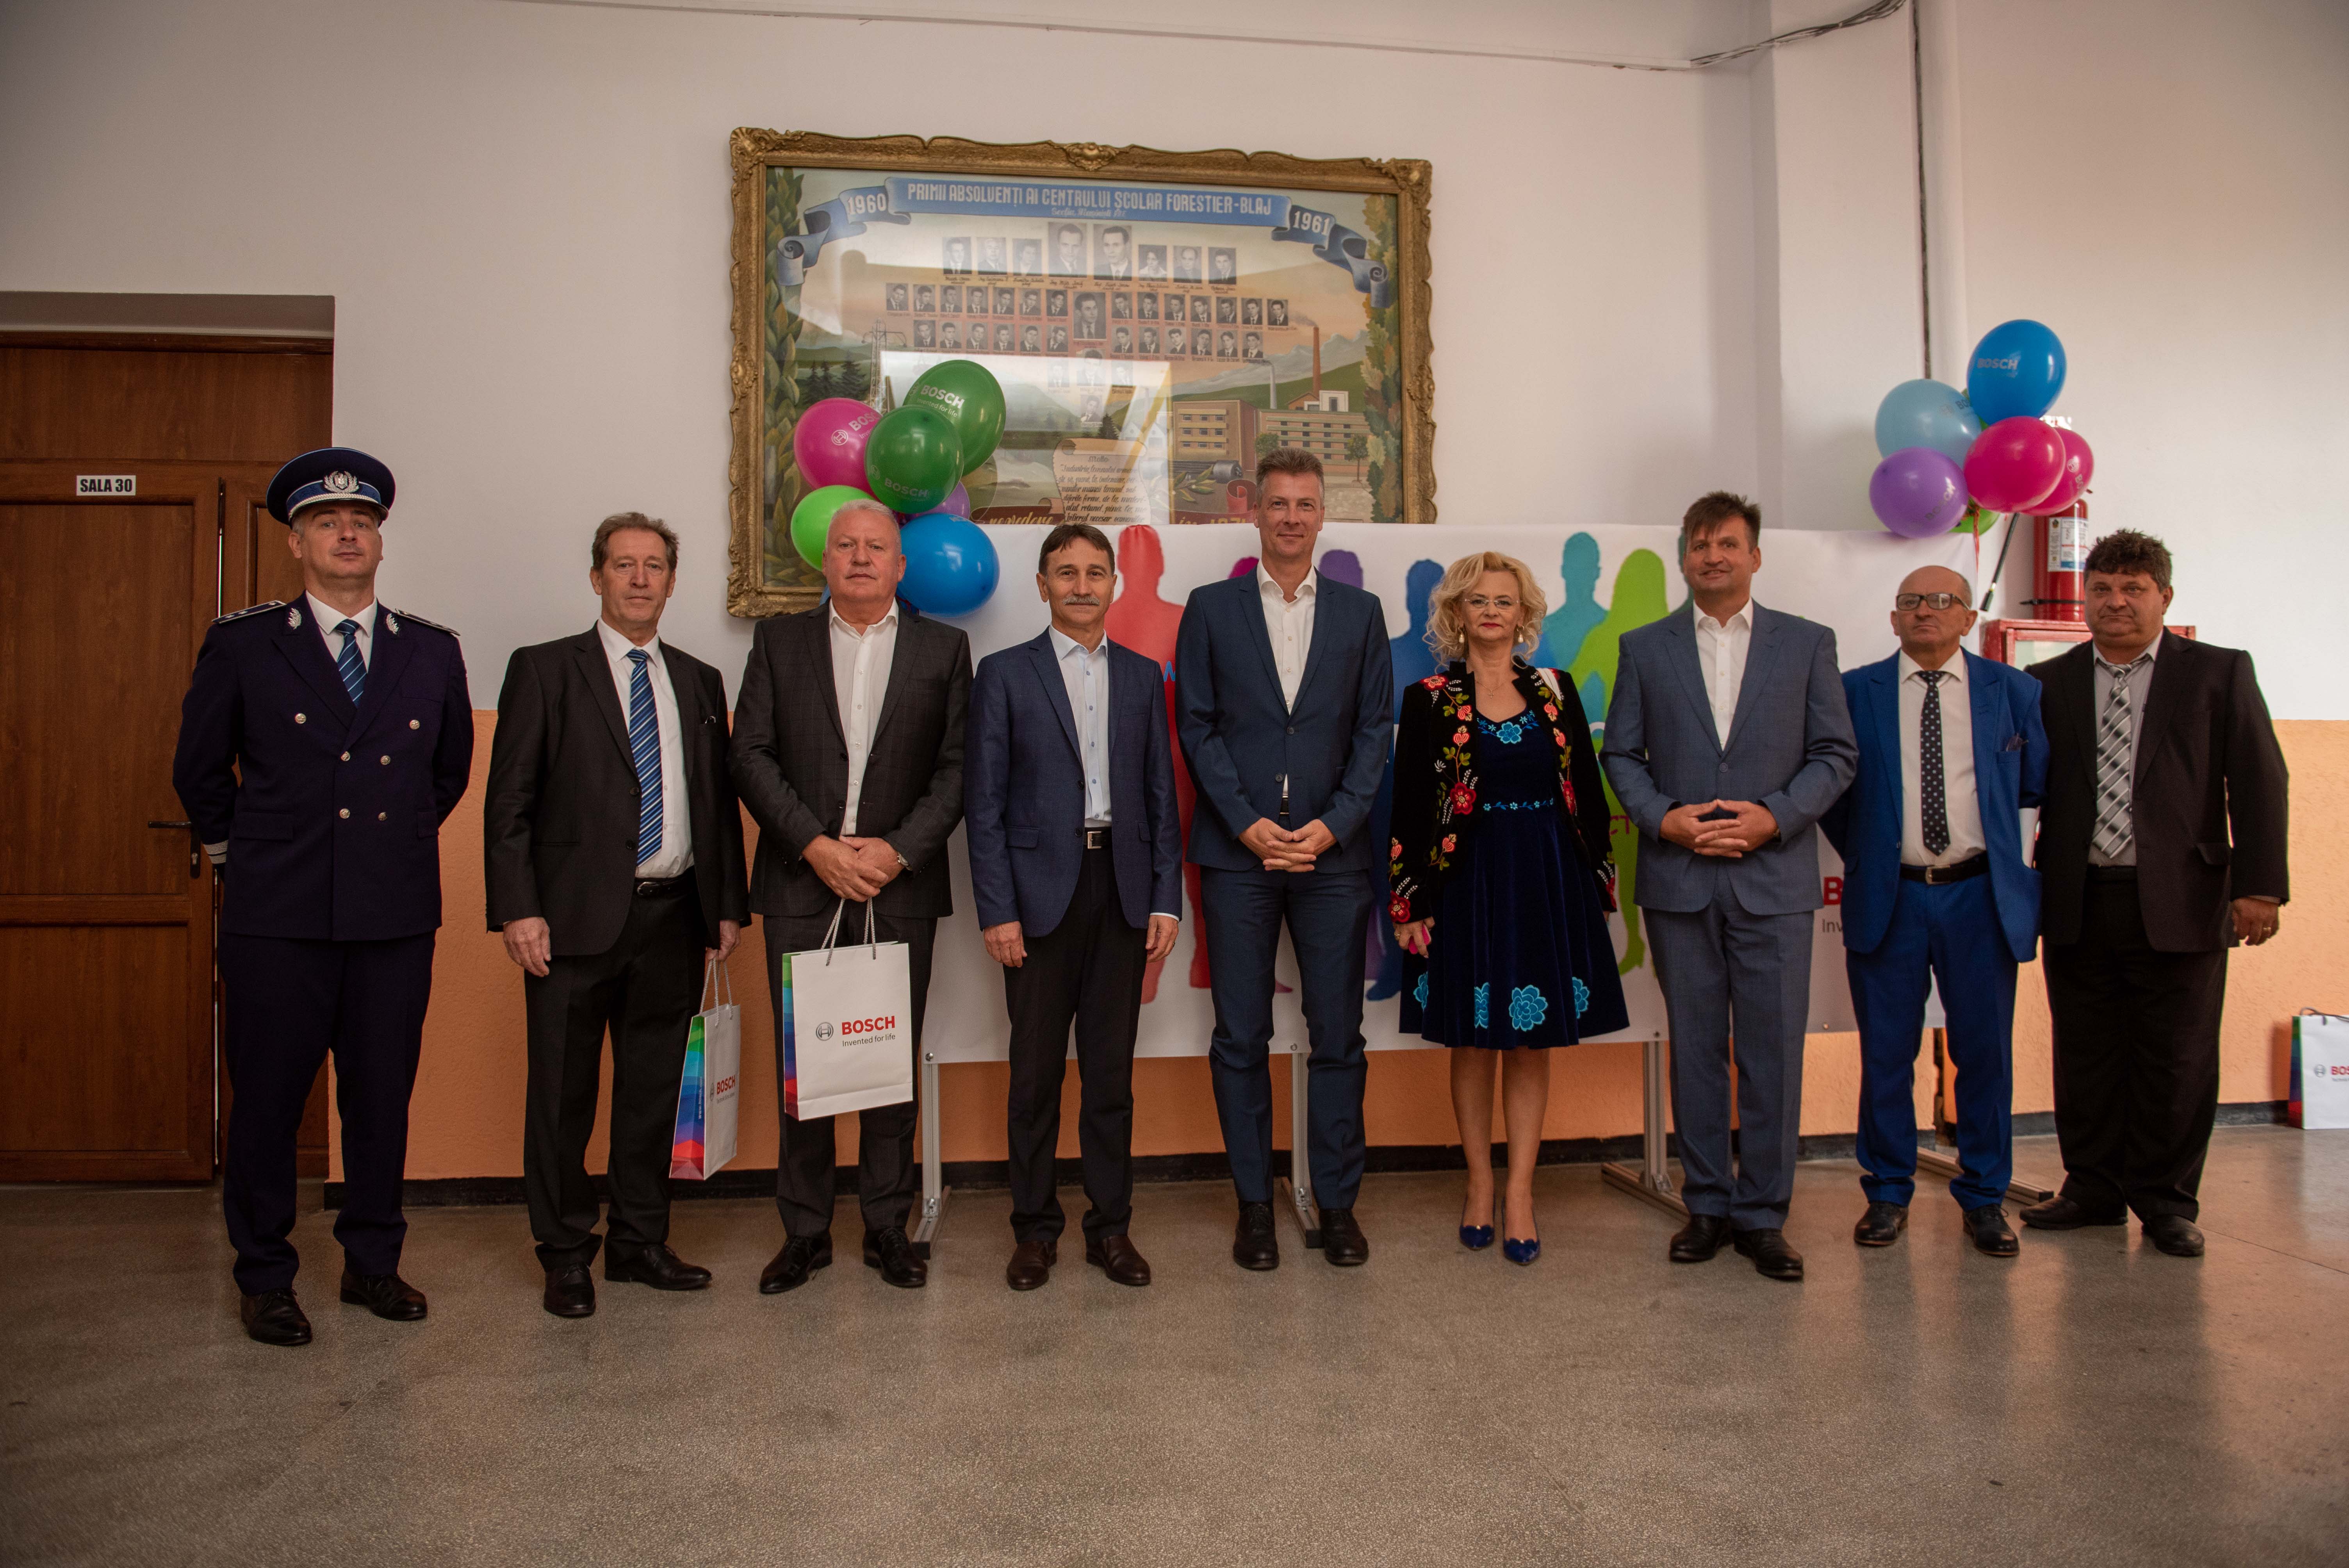 Bosch deschide oficial programul de Şcoală Duală la Blaj